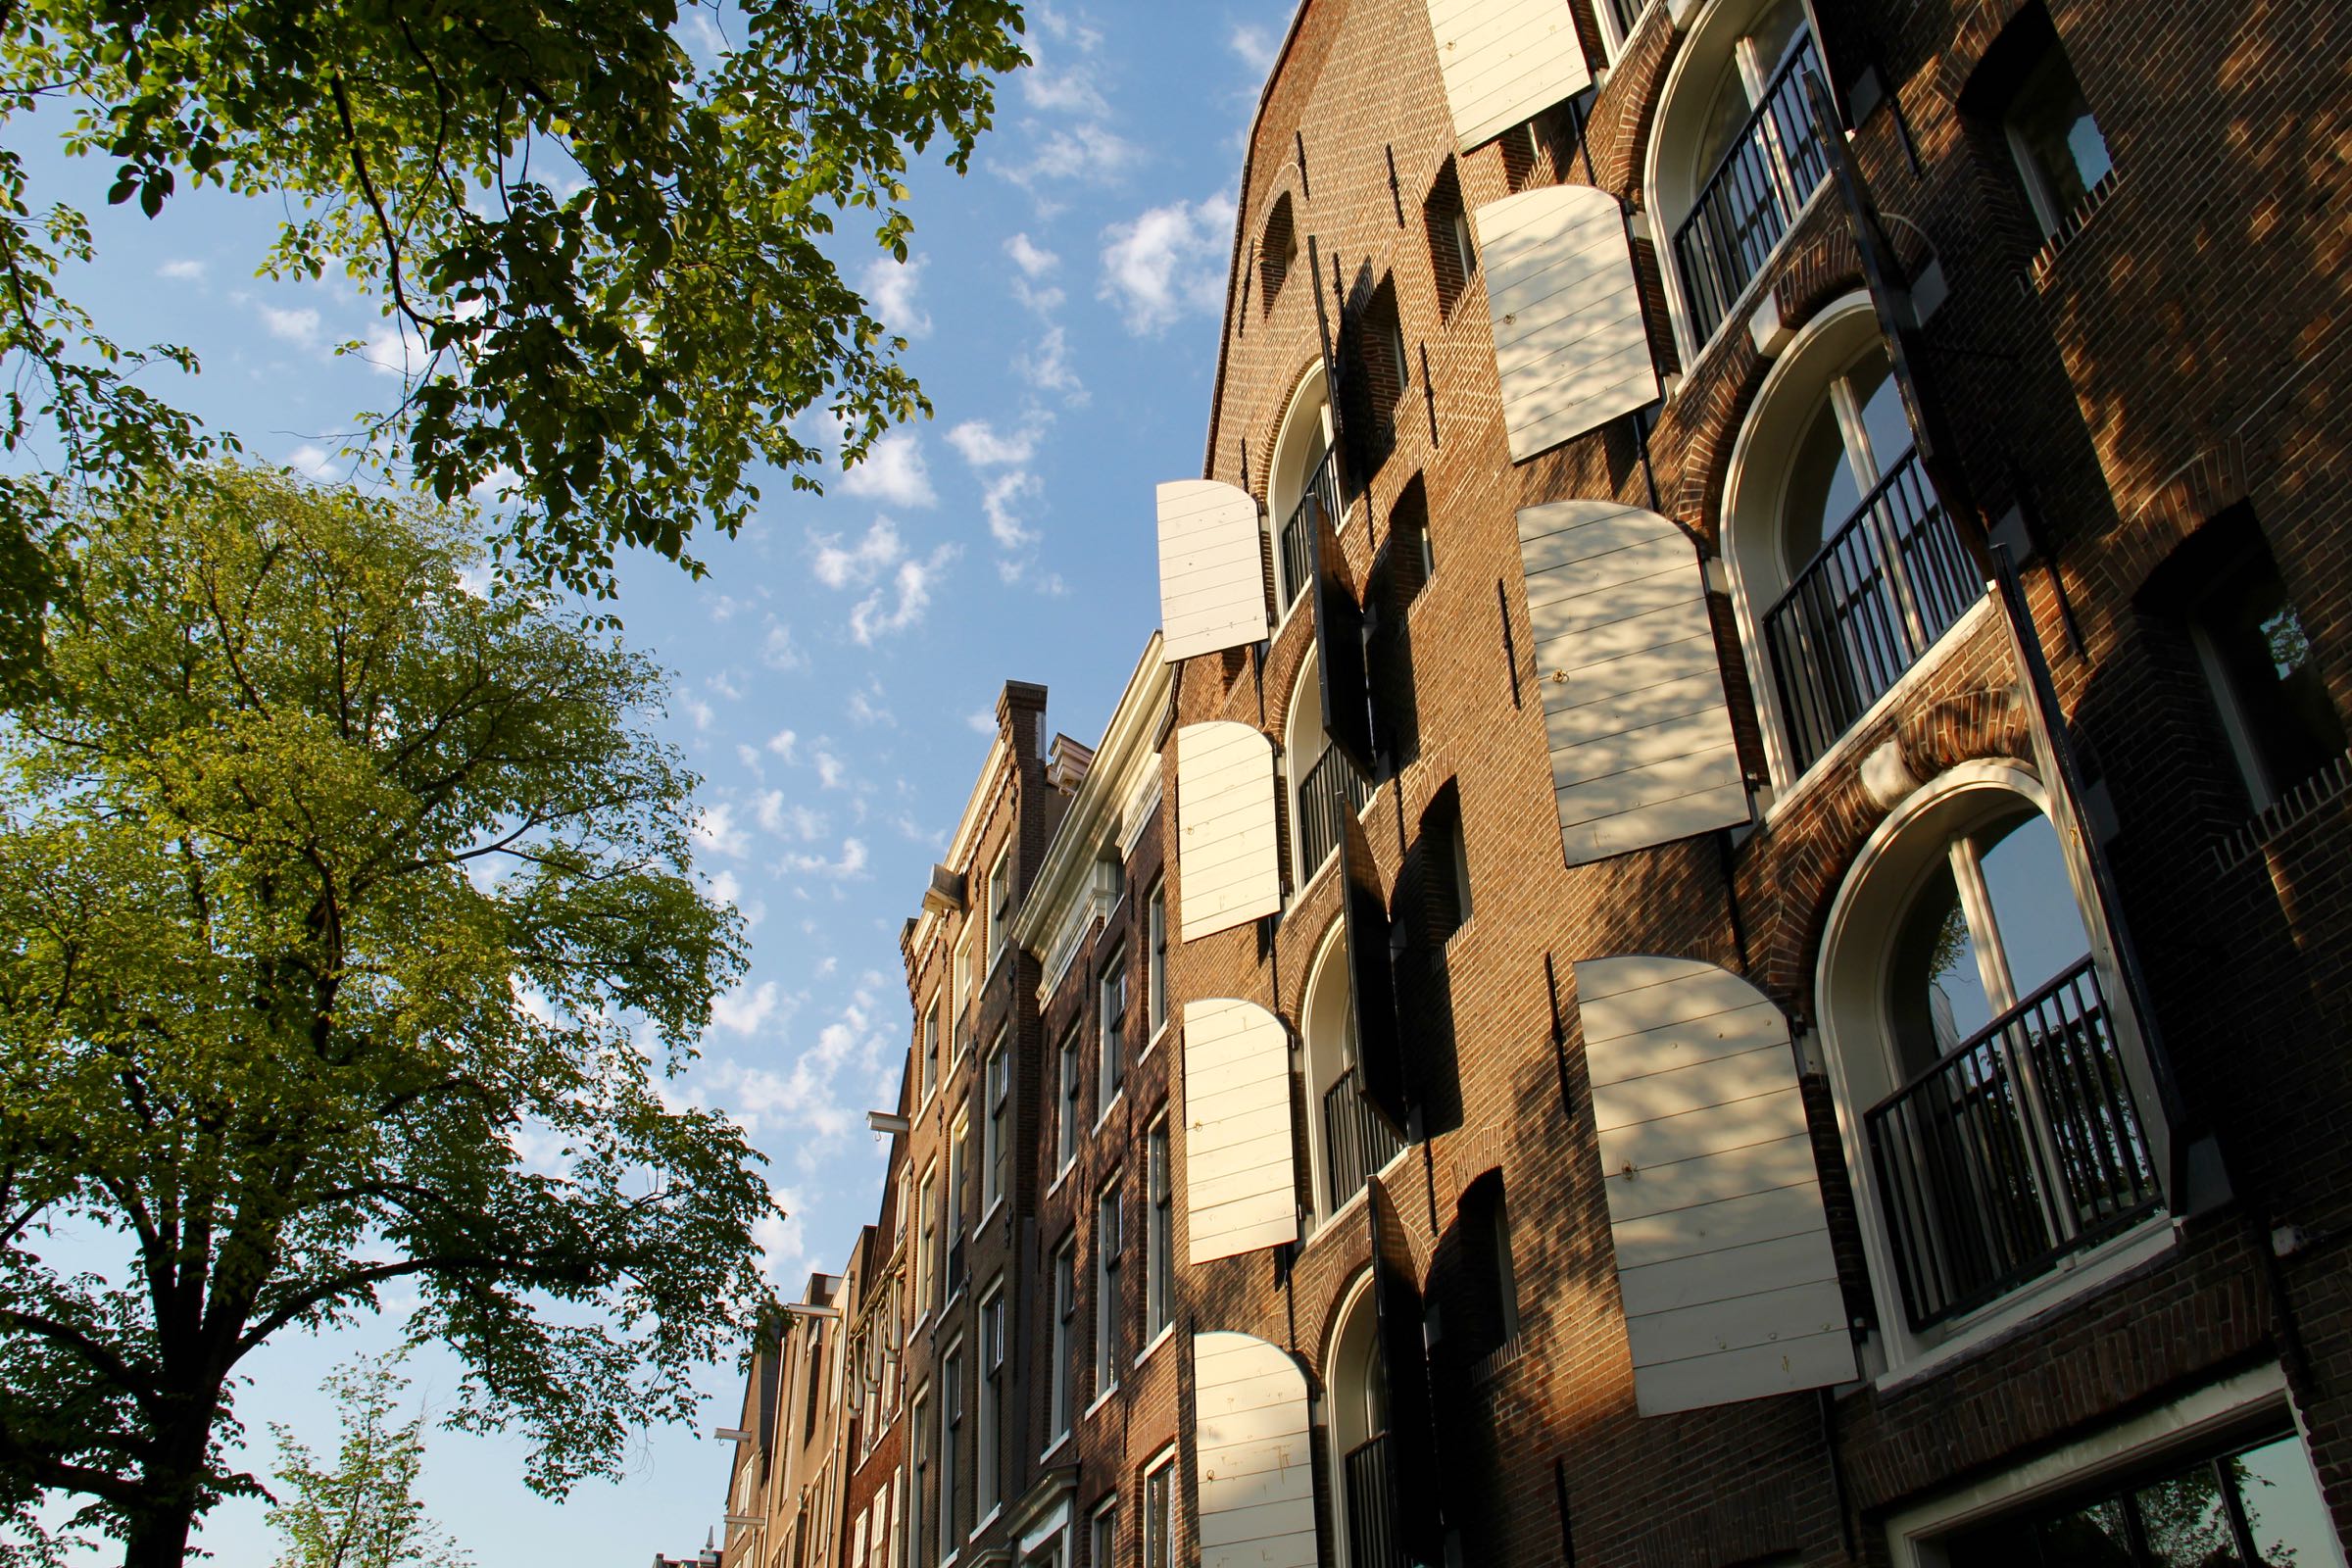 Häuserfront in Amsterdam, Nordholland, Niederlande